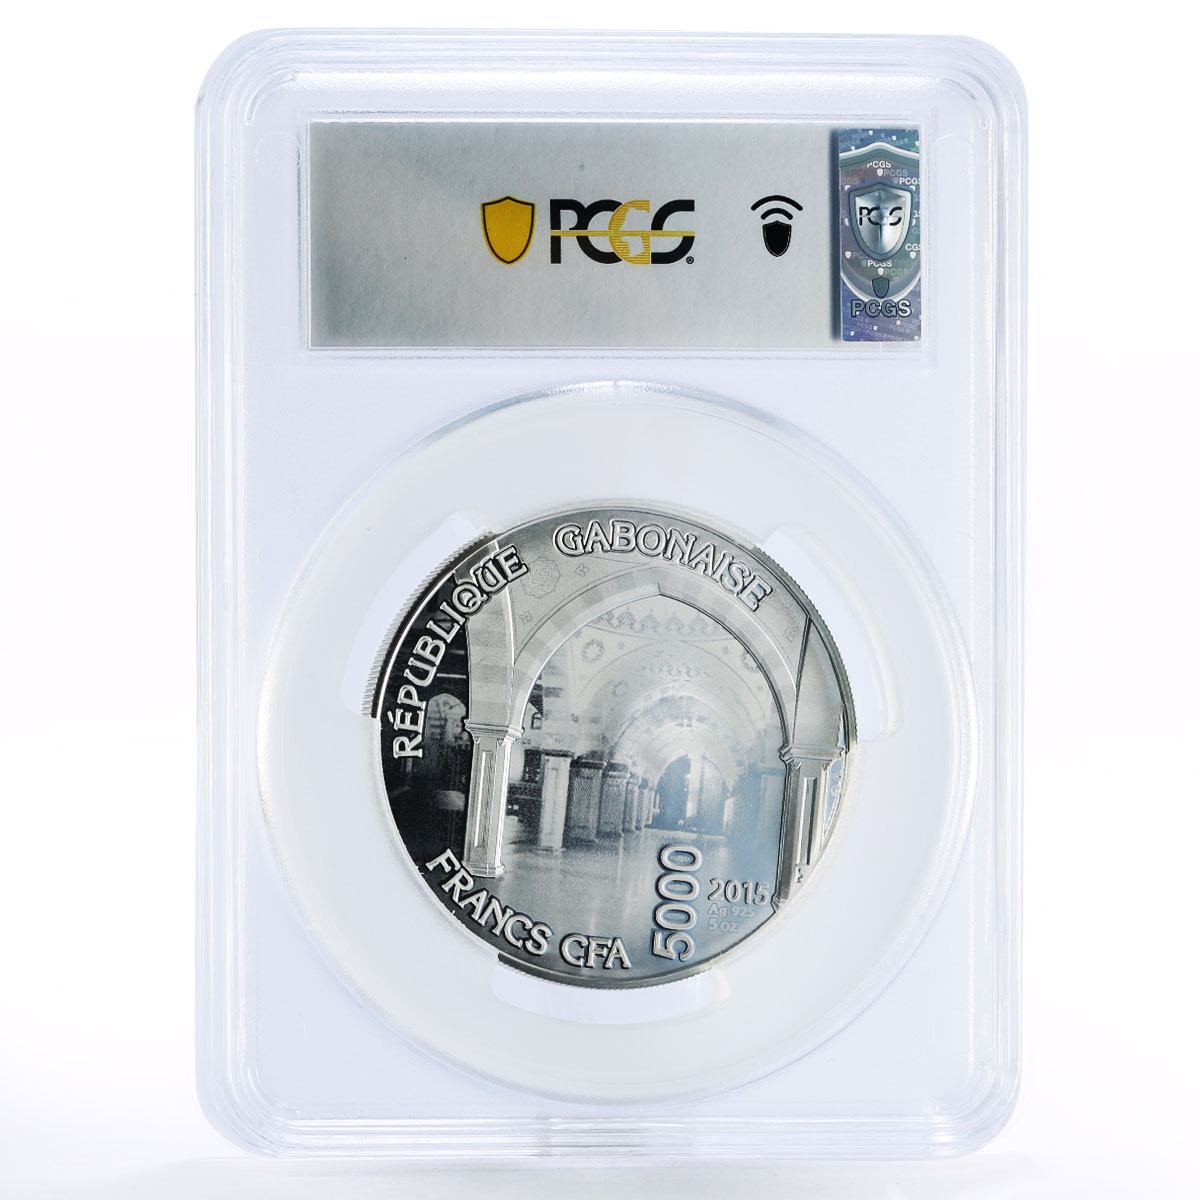 Gabon 5000 francs Mosque Heart of Chechnya Kadyrov PR69 PCGS silver coin 2015